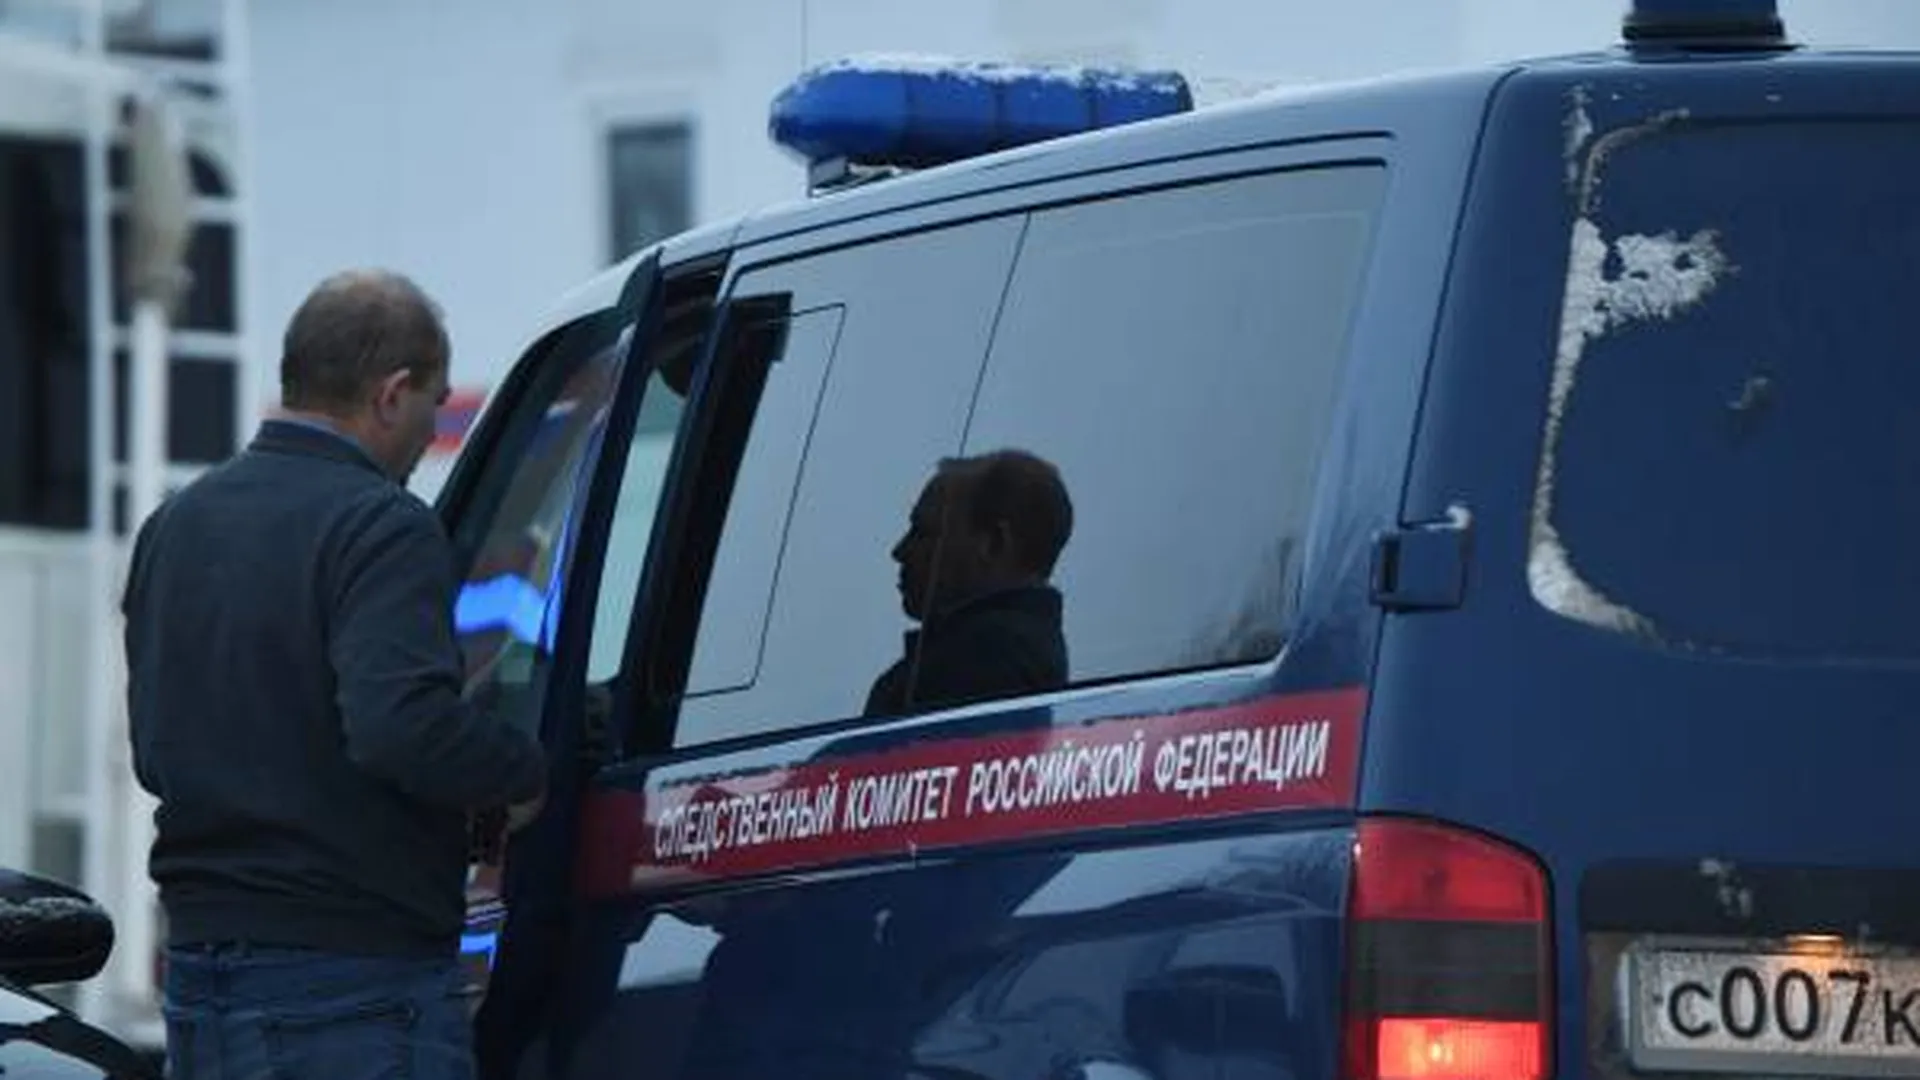 Военная прокуратура заподозрила 4 генералов Росгвардии в хищениях — СМИ